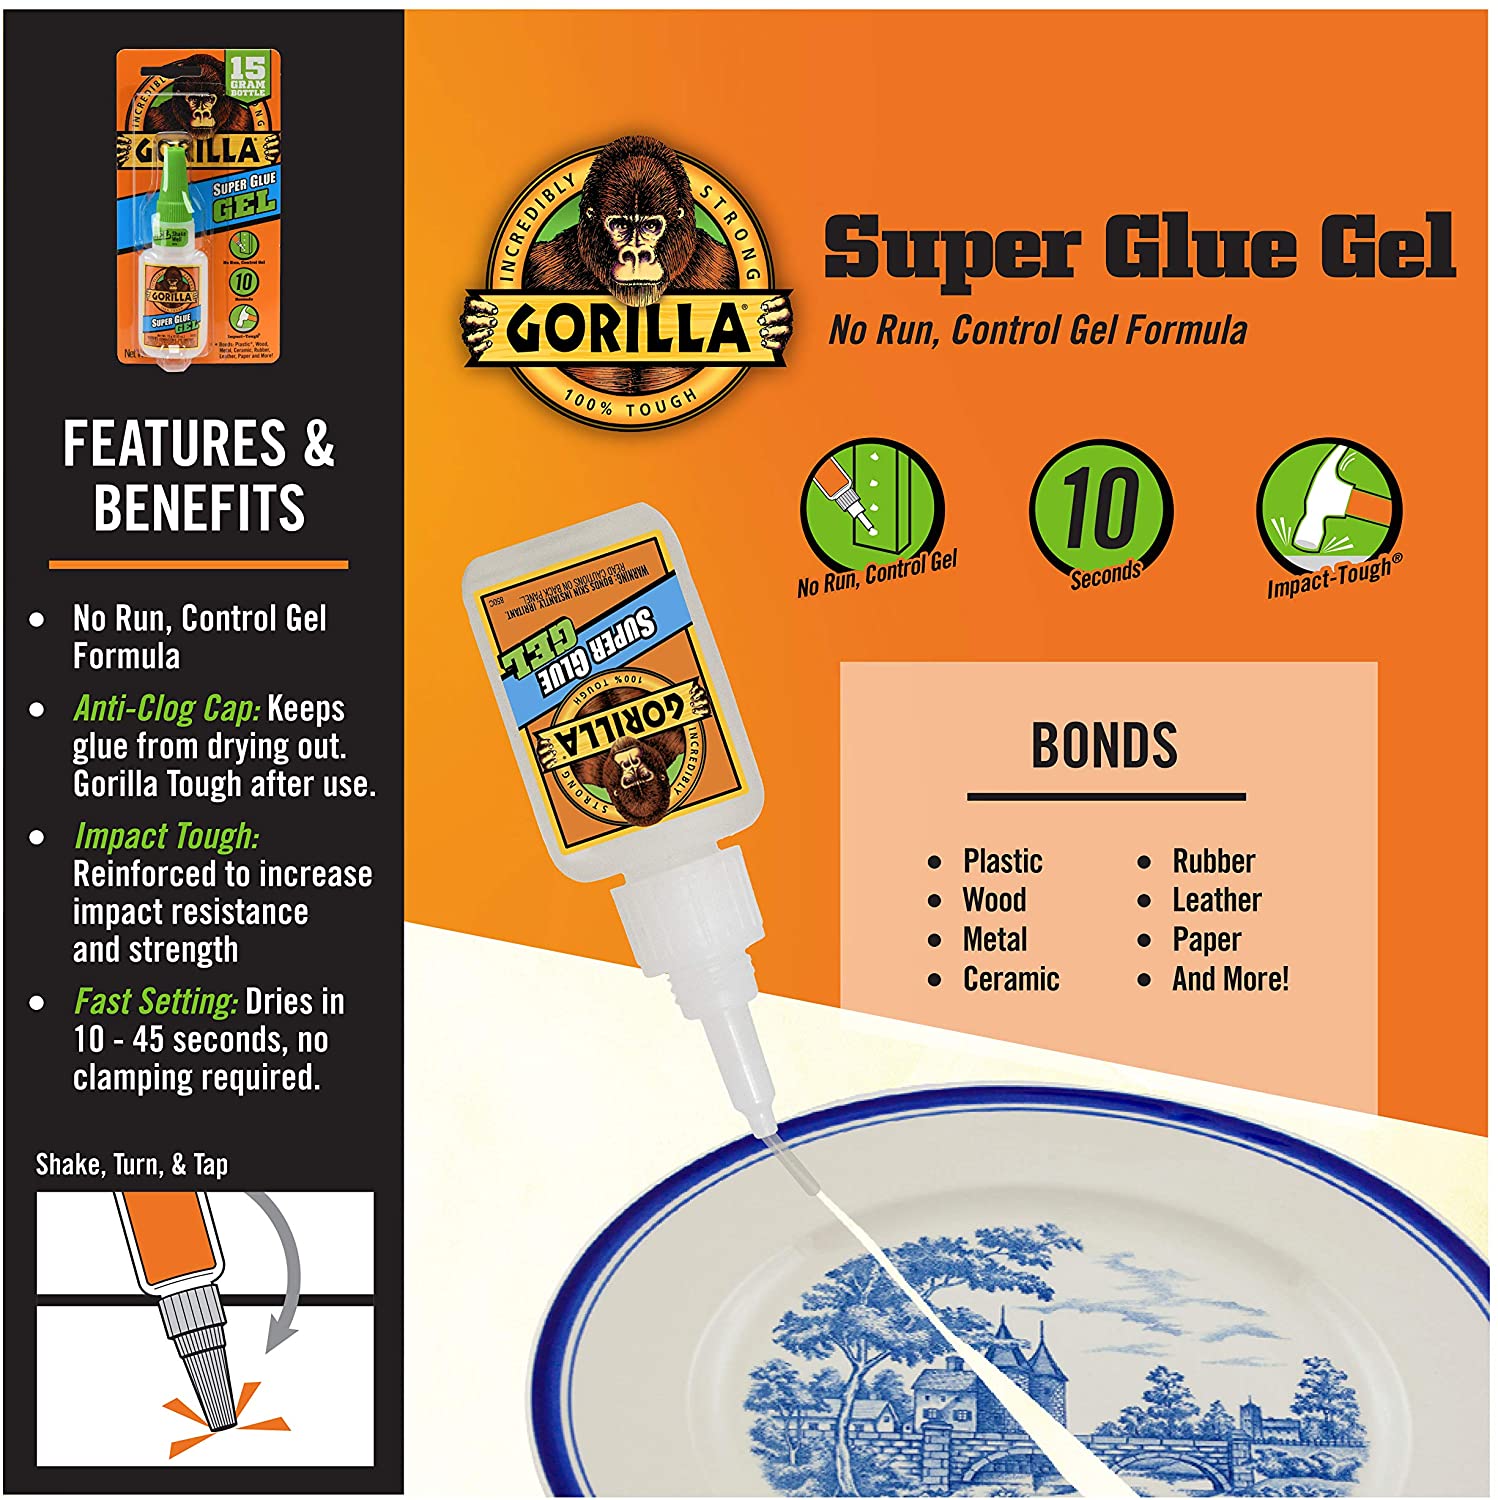  Gorilla Glue Super Glue Liquid, Cyanoacrylate Glue